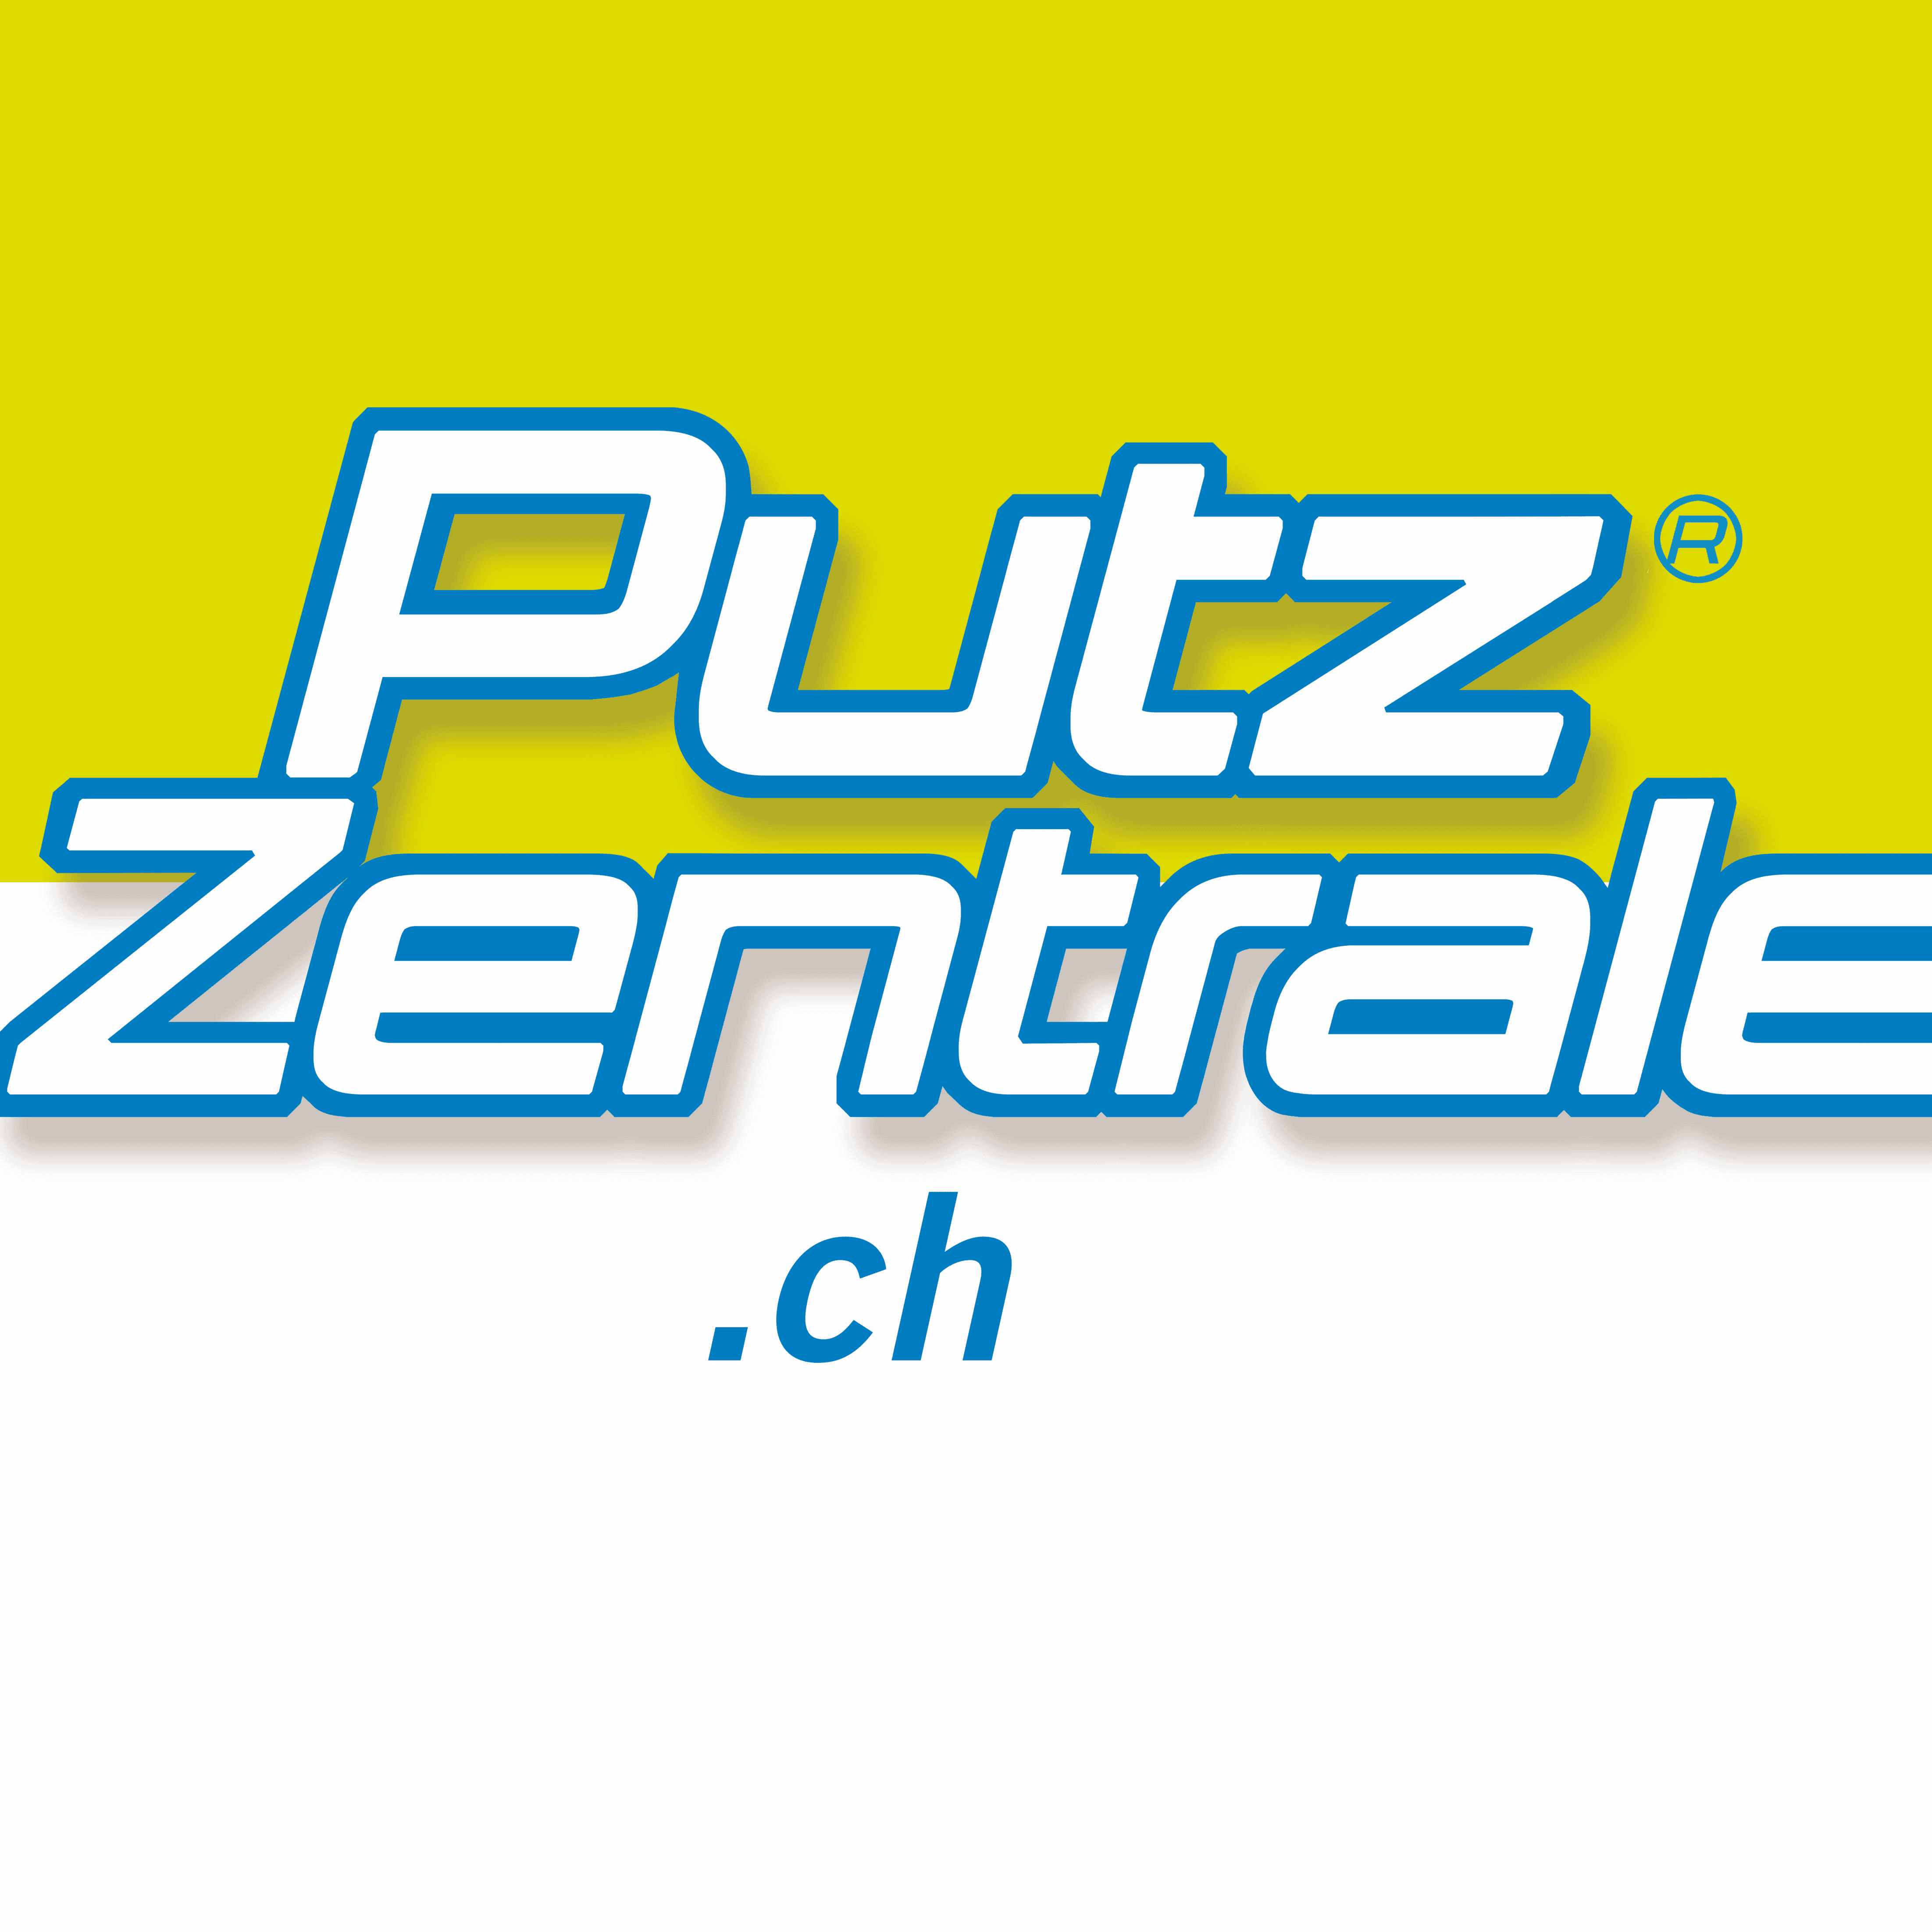 Putzzentrale.ch Zentralschweiz GmbH